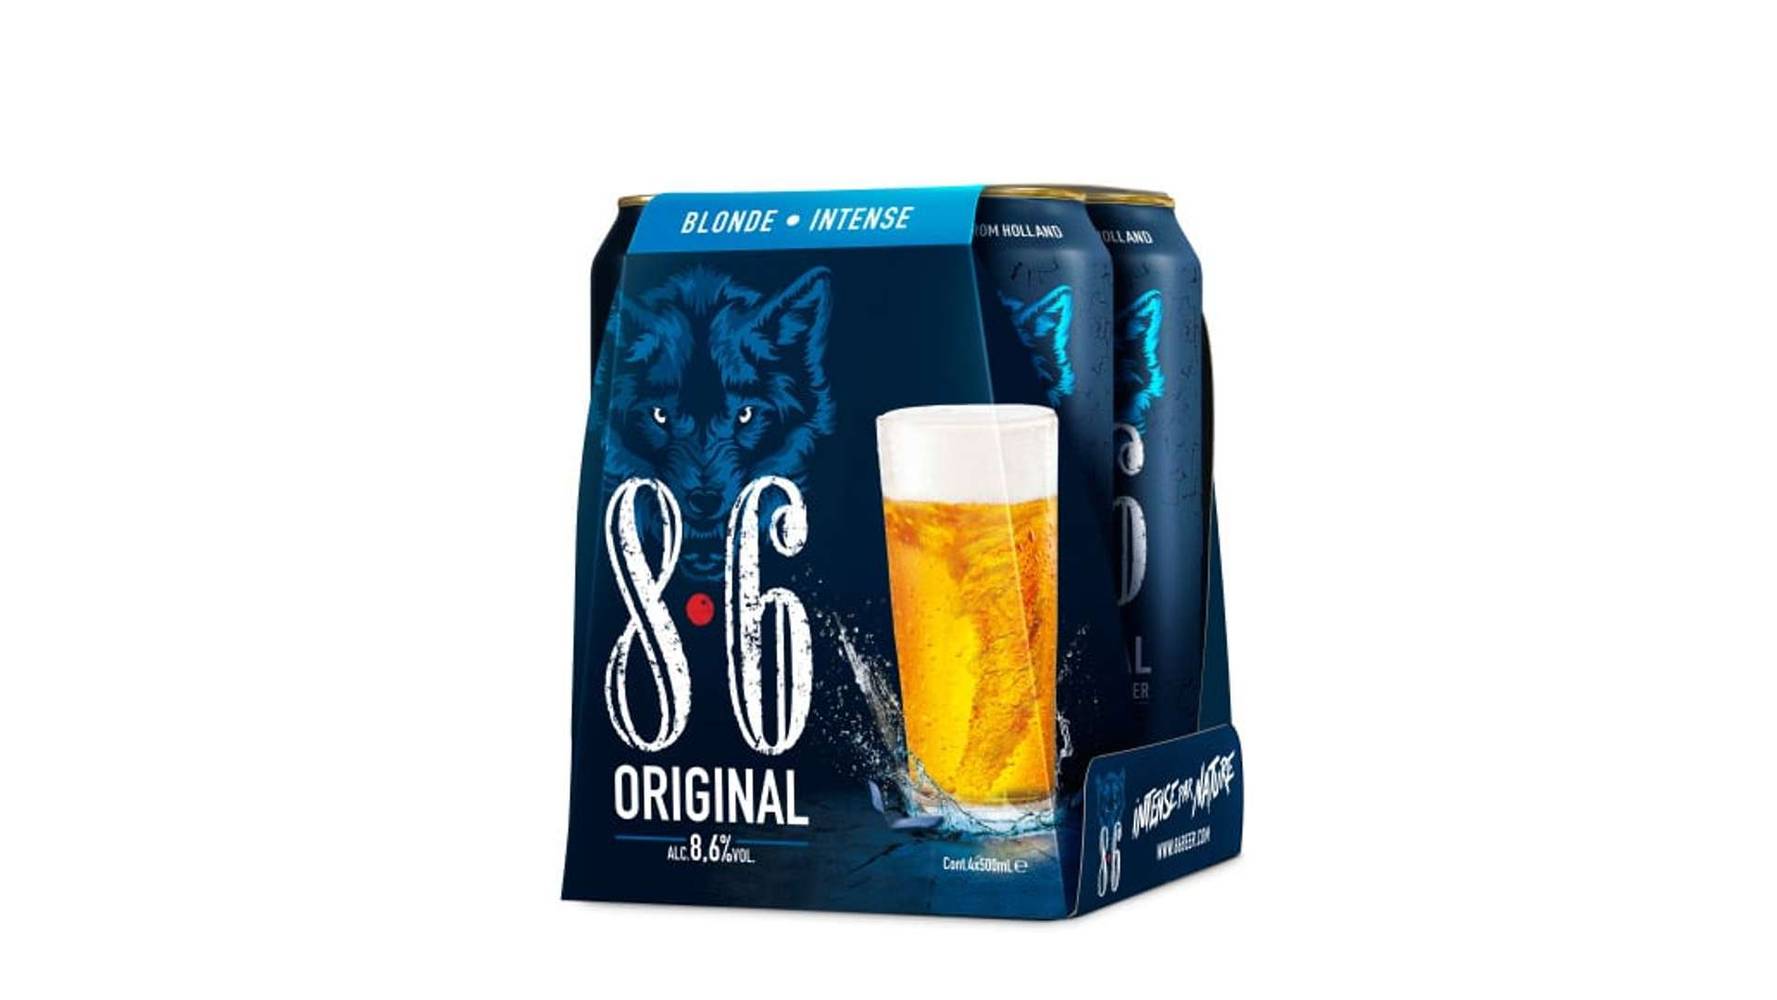 8.6 Blond beer original (8,6%) Le pack de 4x50cl